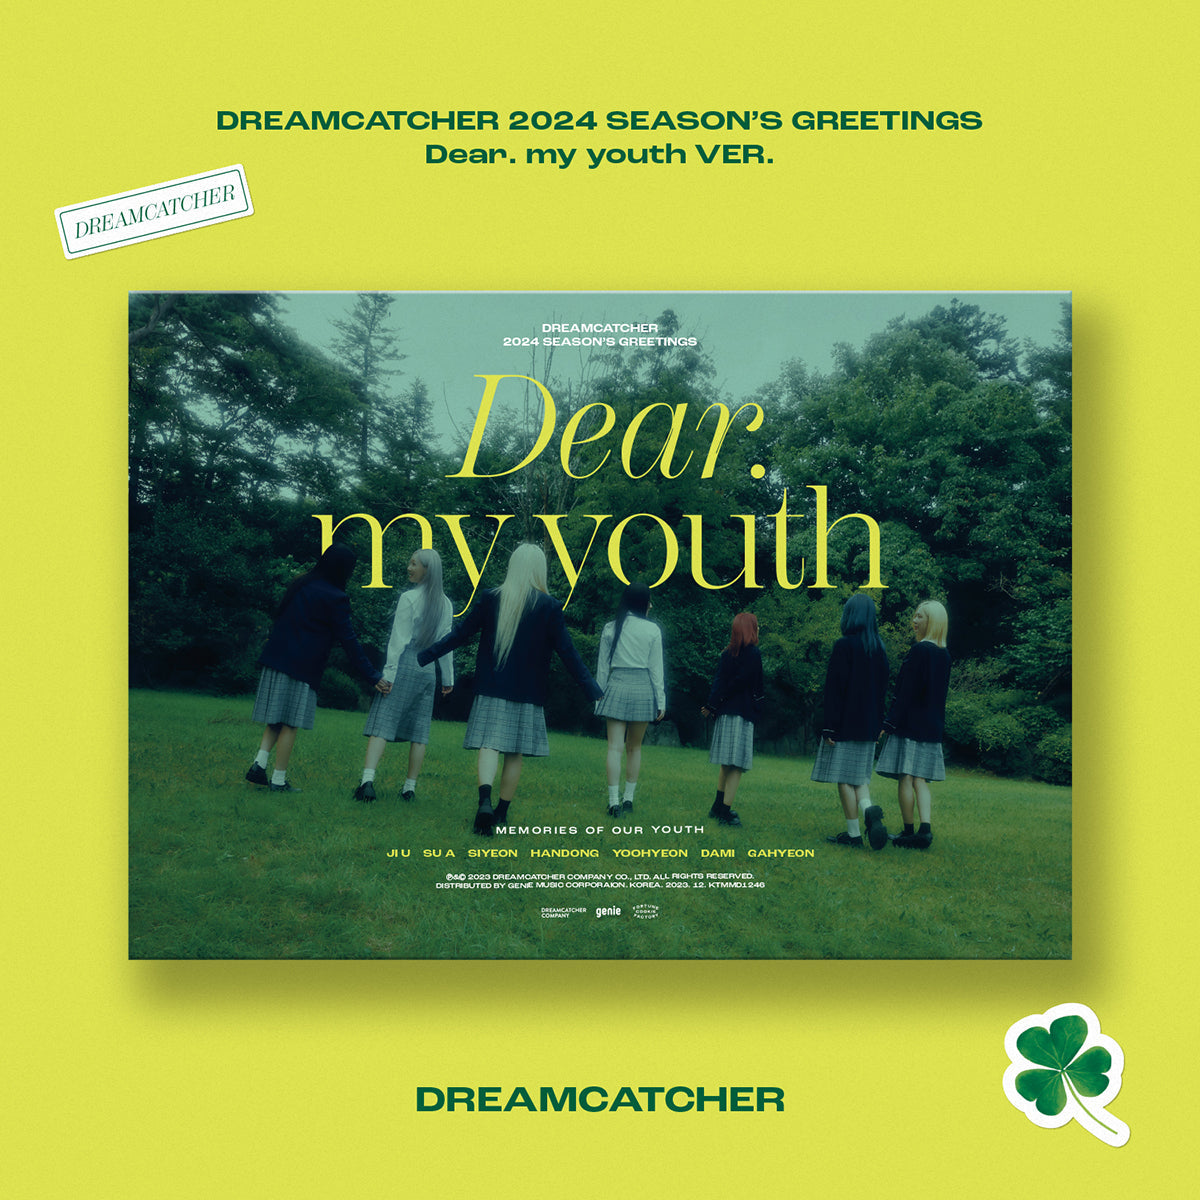 DREAMCATCHER - 2024 SEASON’S GREETINGS [Dear, my youth]